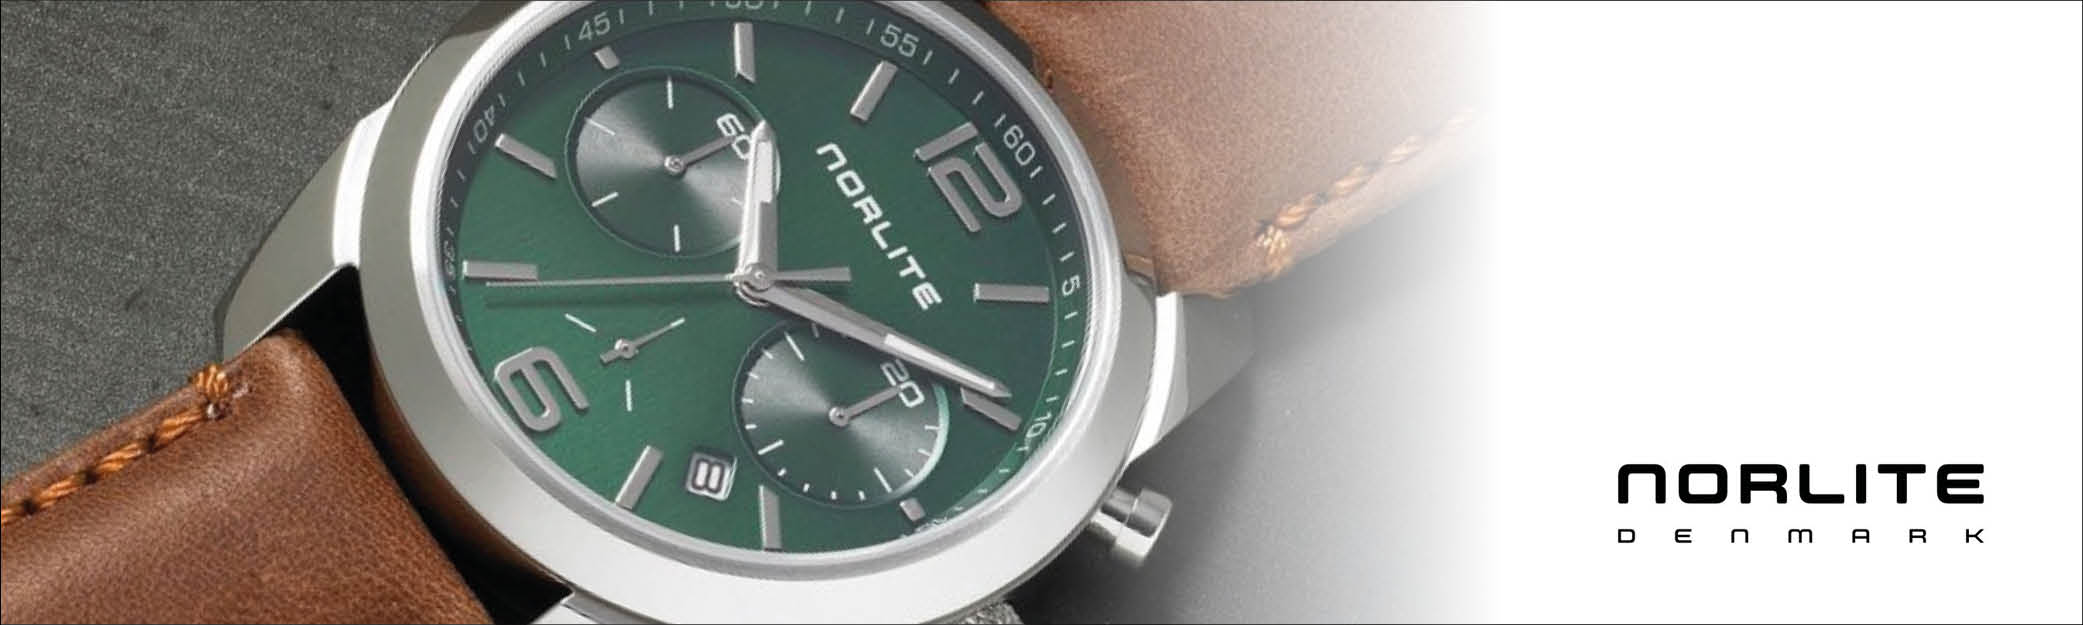 Norlite Denmark er et dansk brand hvis ure er designet udfra et enkelt og minimalistisk perspektiv